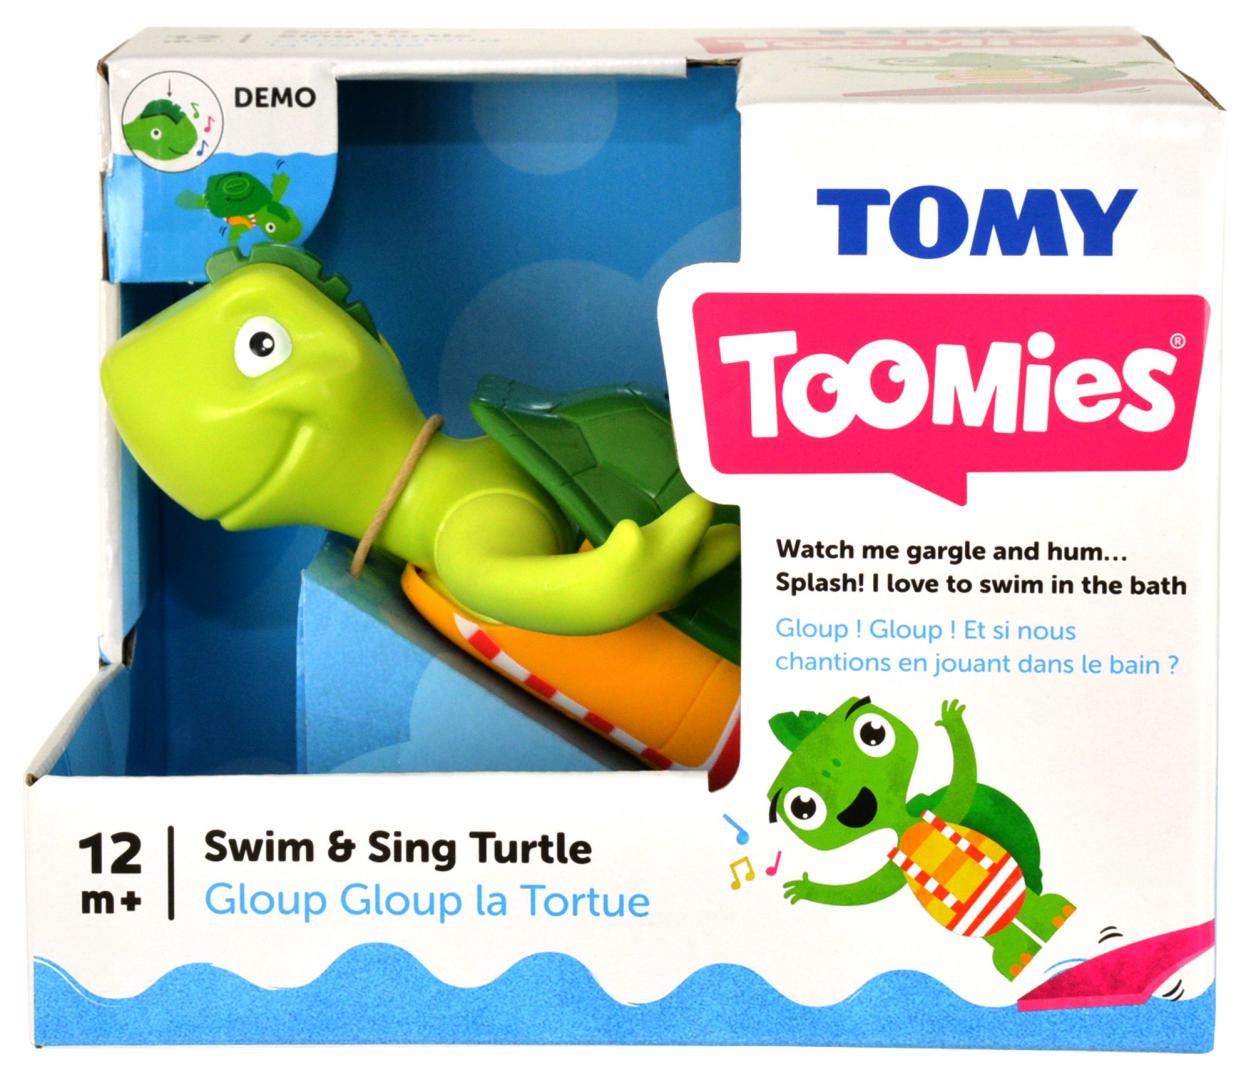 Swim 'n' sing turtle